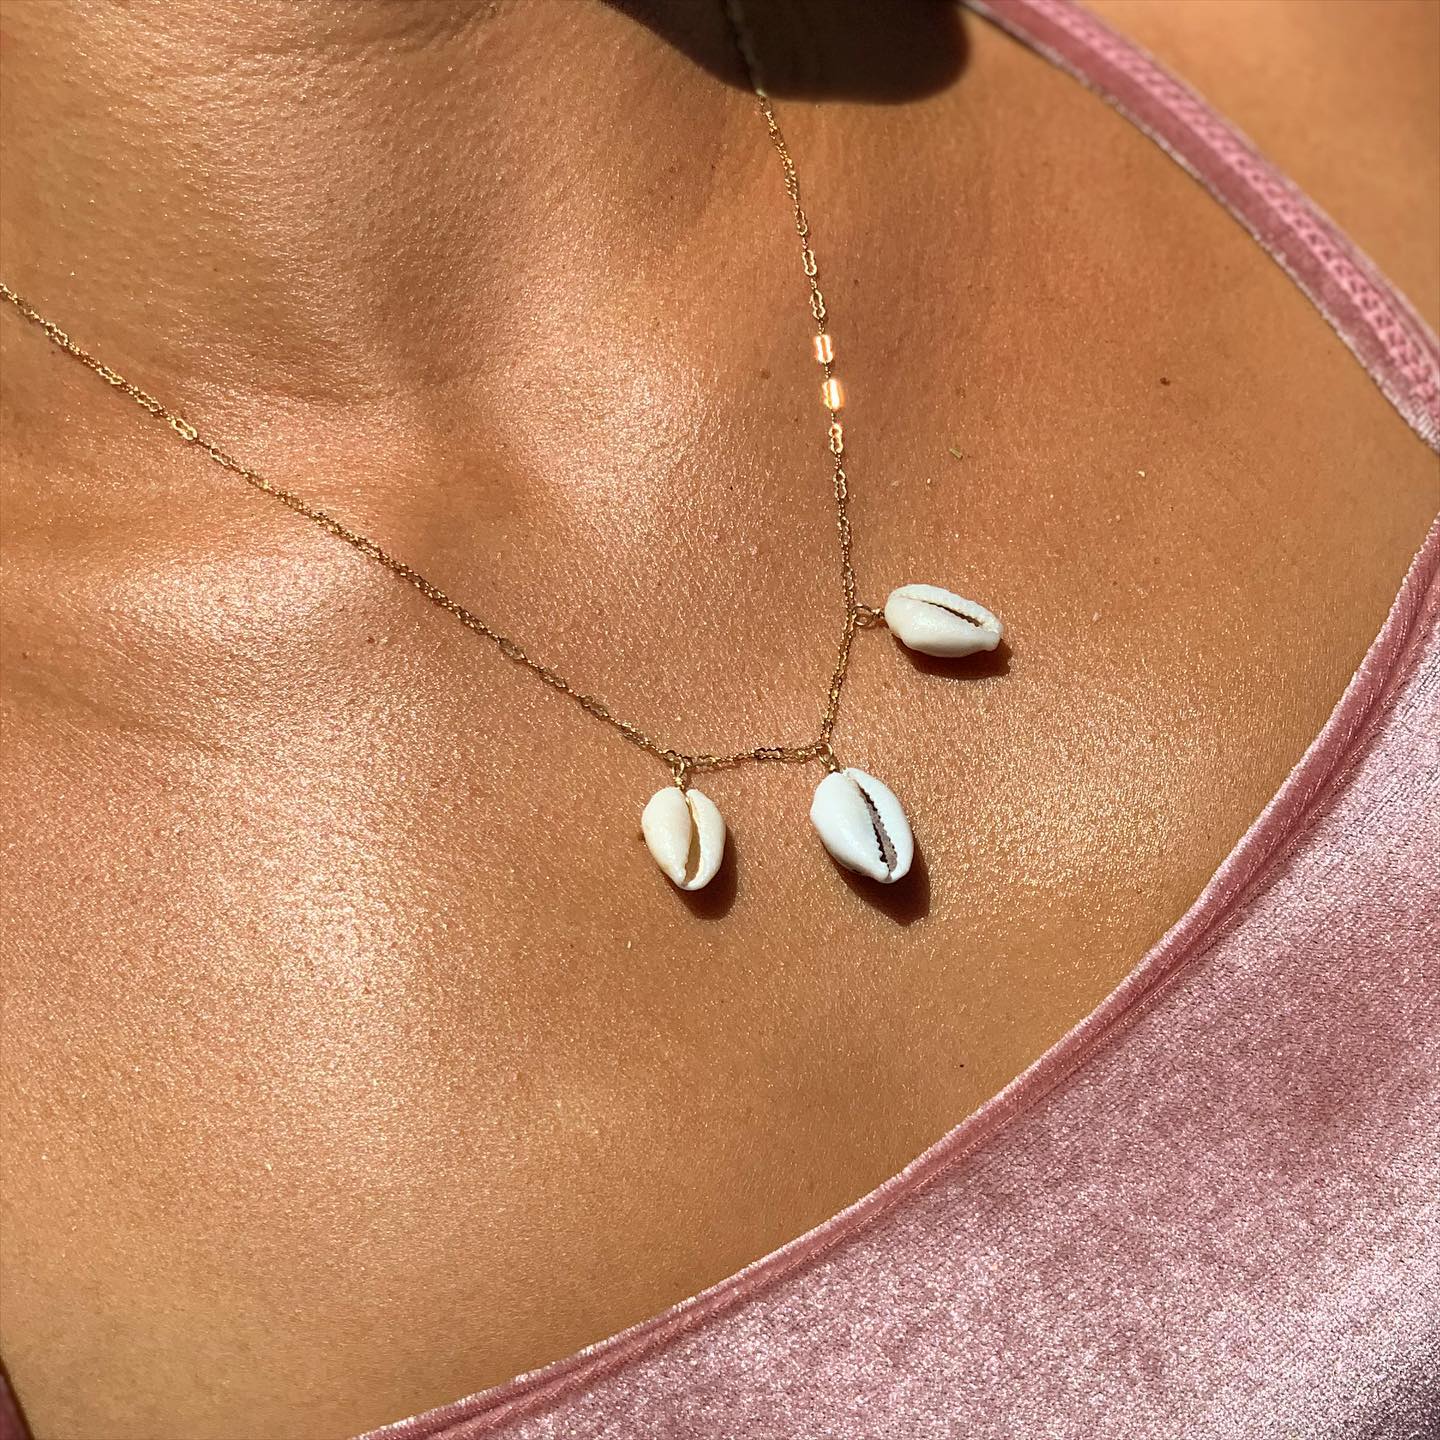 Hawaiian Jewelry by Nai’a Elle